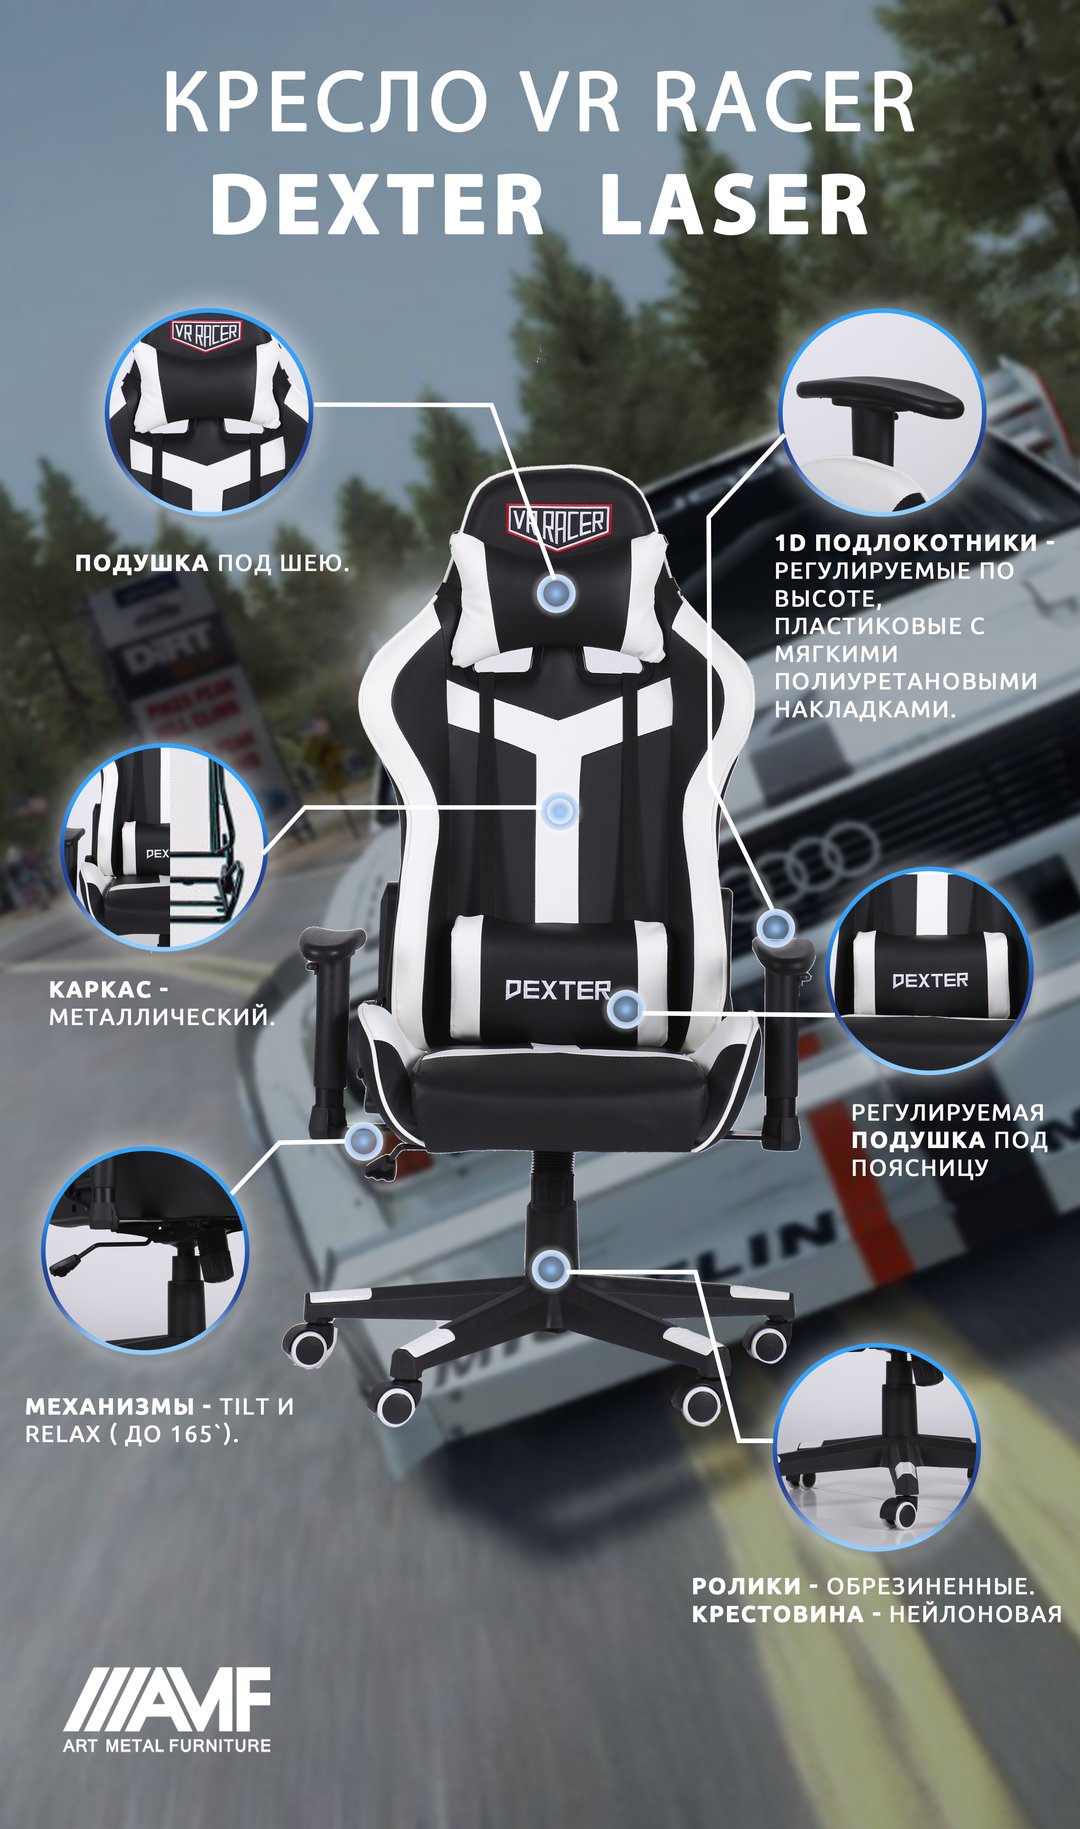 Кресло VR Racer Dexter Laser описание-2